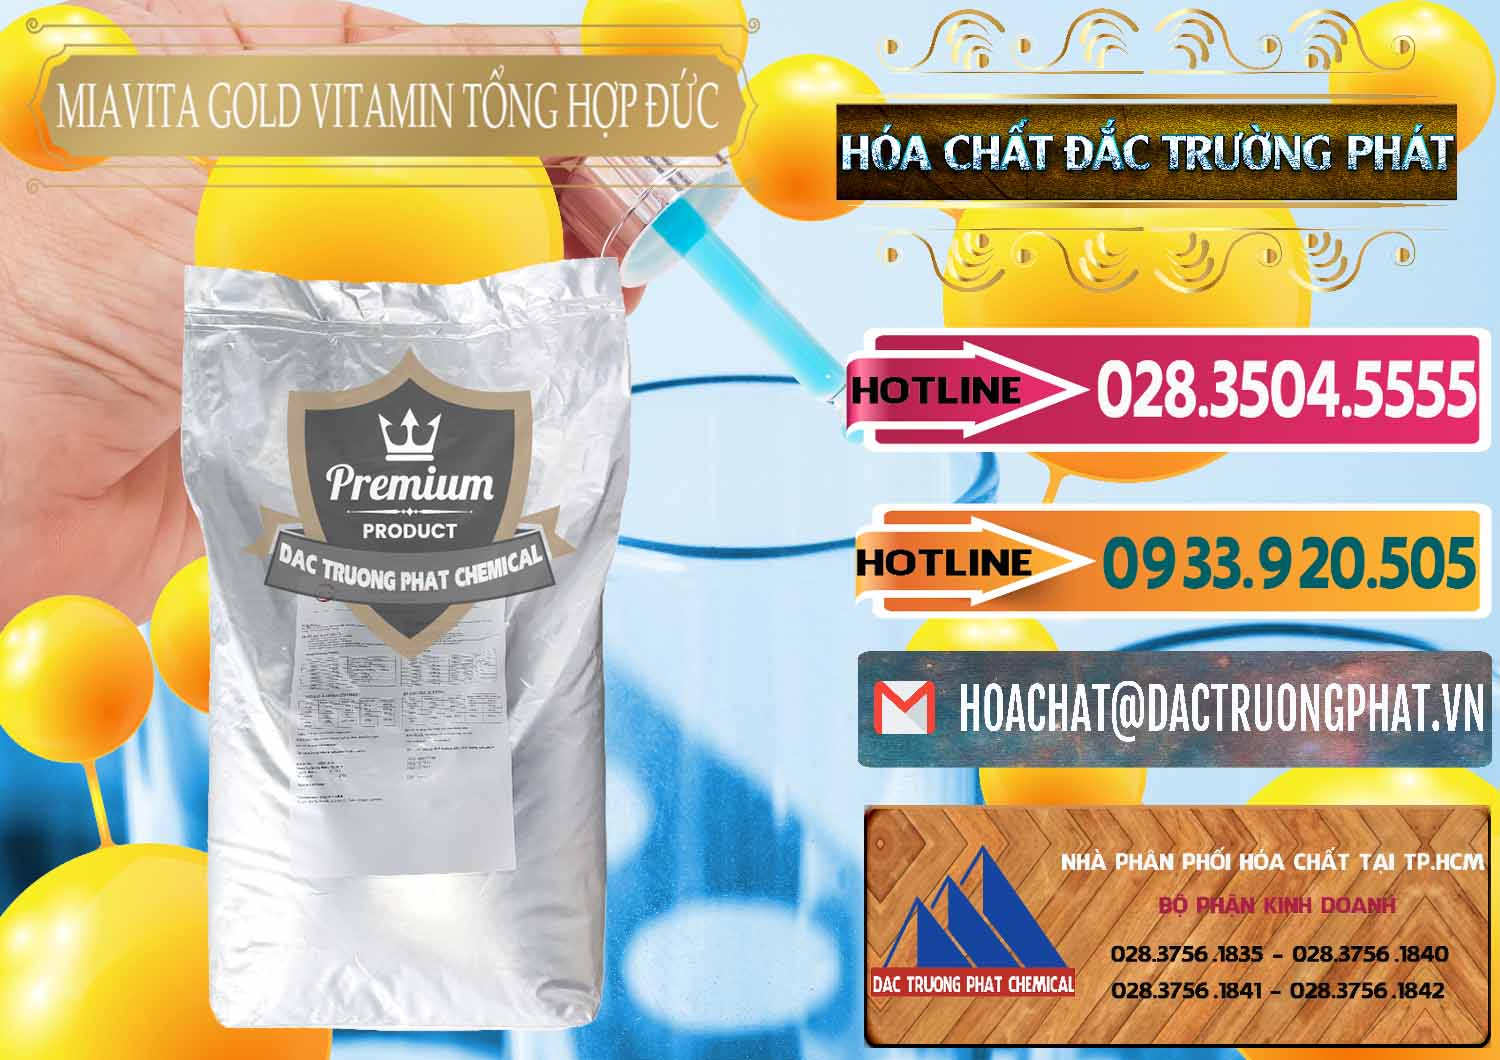 Cty chuyên bán - phân phối Vitamin Tổng Hợp Miavita Gold Đức Germany - 0307 - Cty phân phối & bán hóa chất tại TP.HCM - dactruongphat.vn